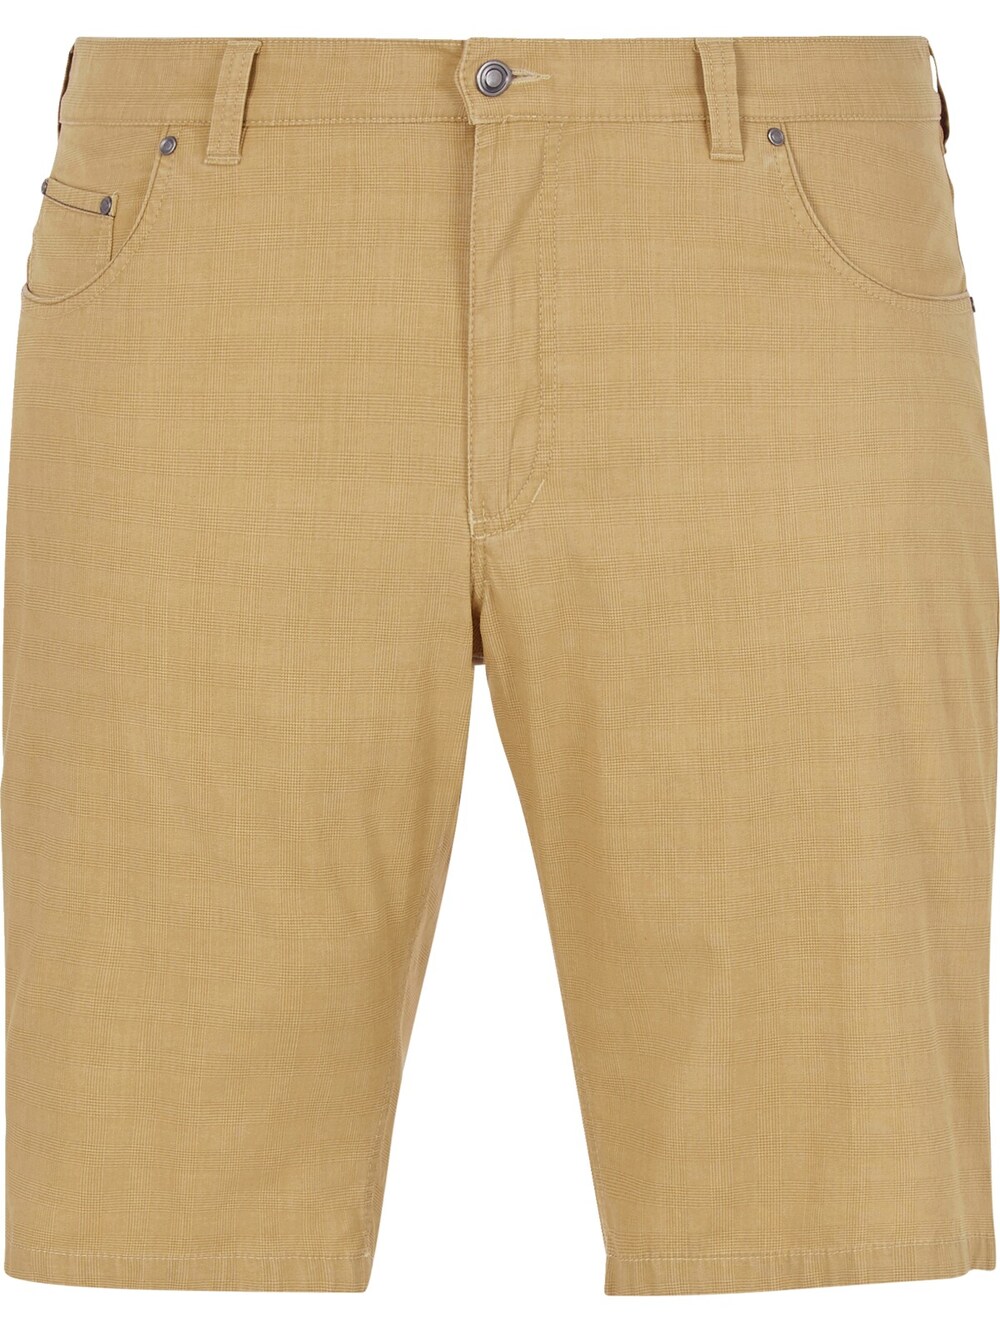 Свободные брюки Charles Colby Baron Aran, горчичный/пастельно-желтый подвеска яшма желтый горчичный